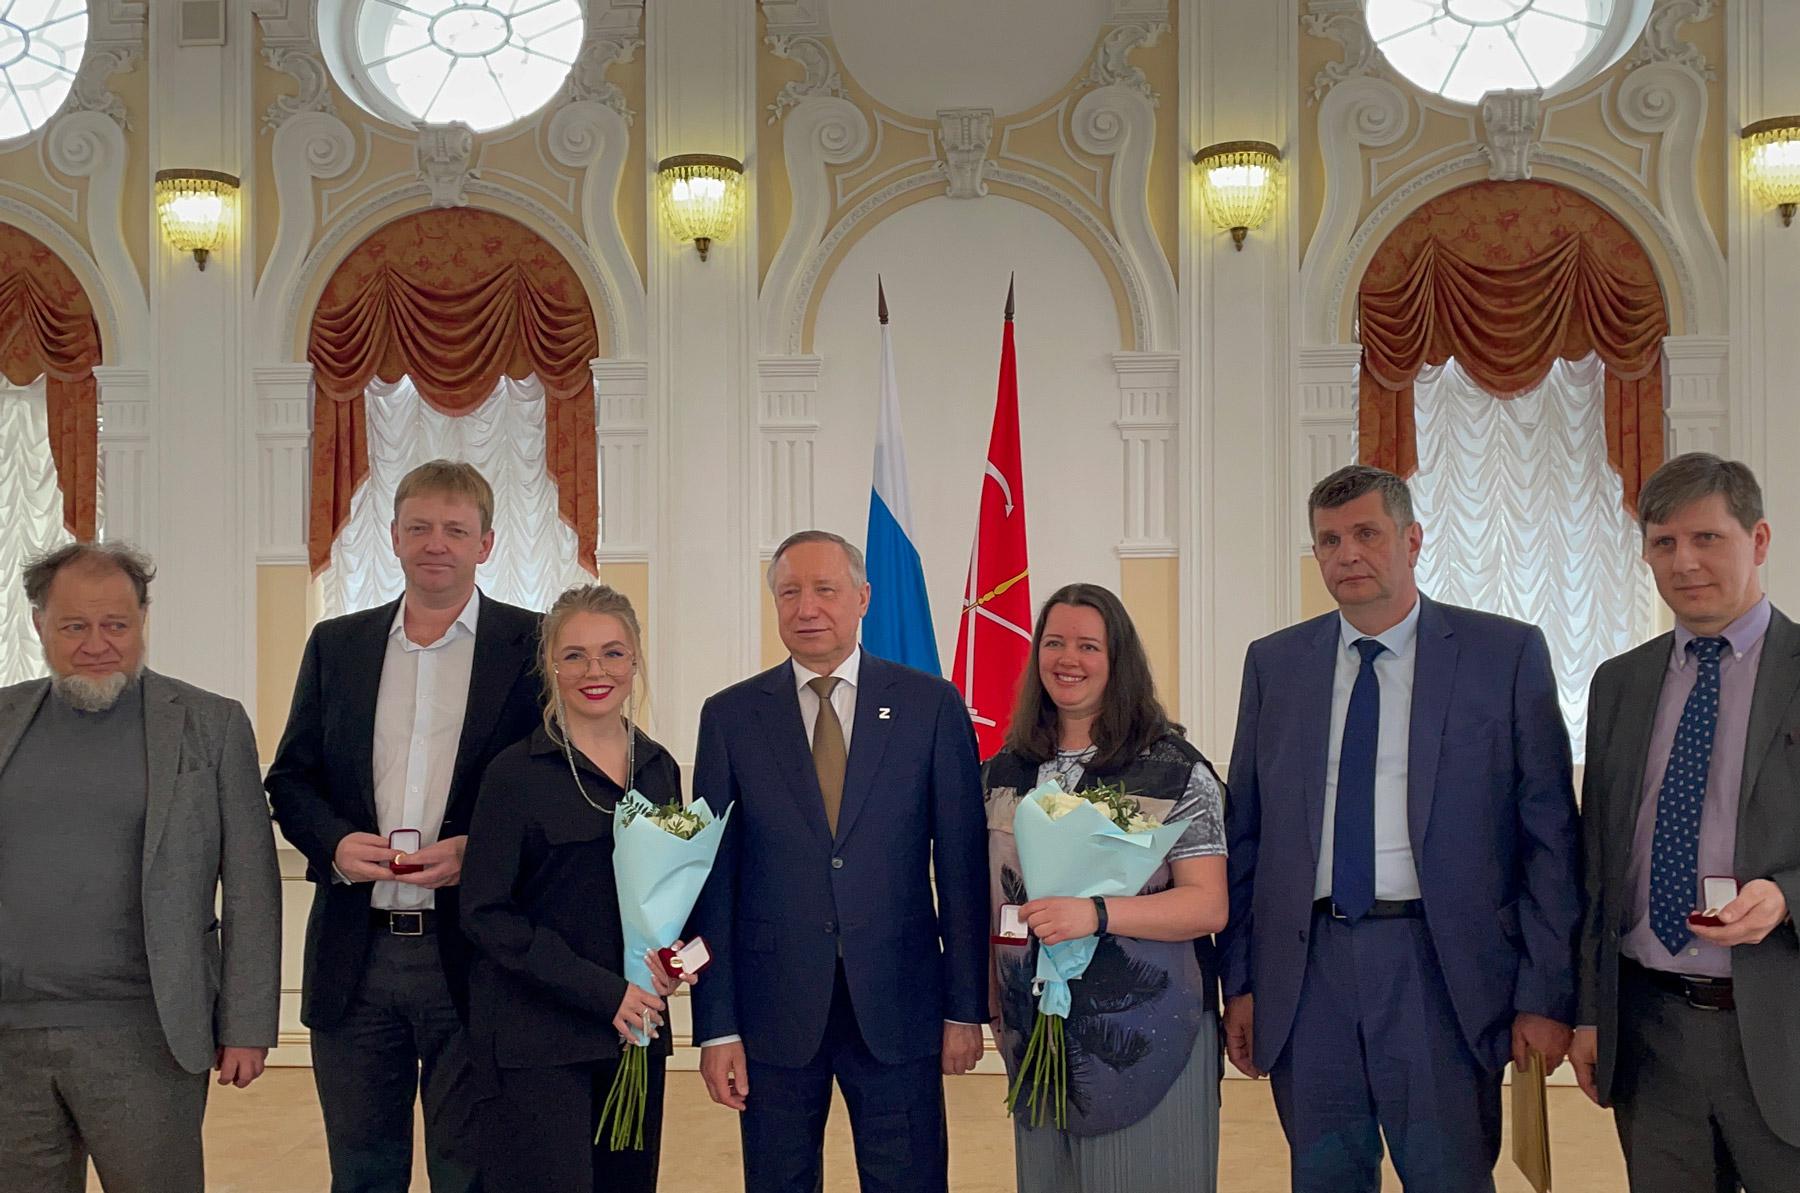 Коллектив "Студии 44" получил премию правительства Санкт-Петербурга в области культуры и искусства